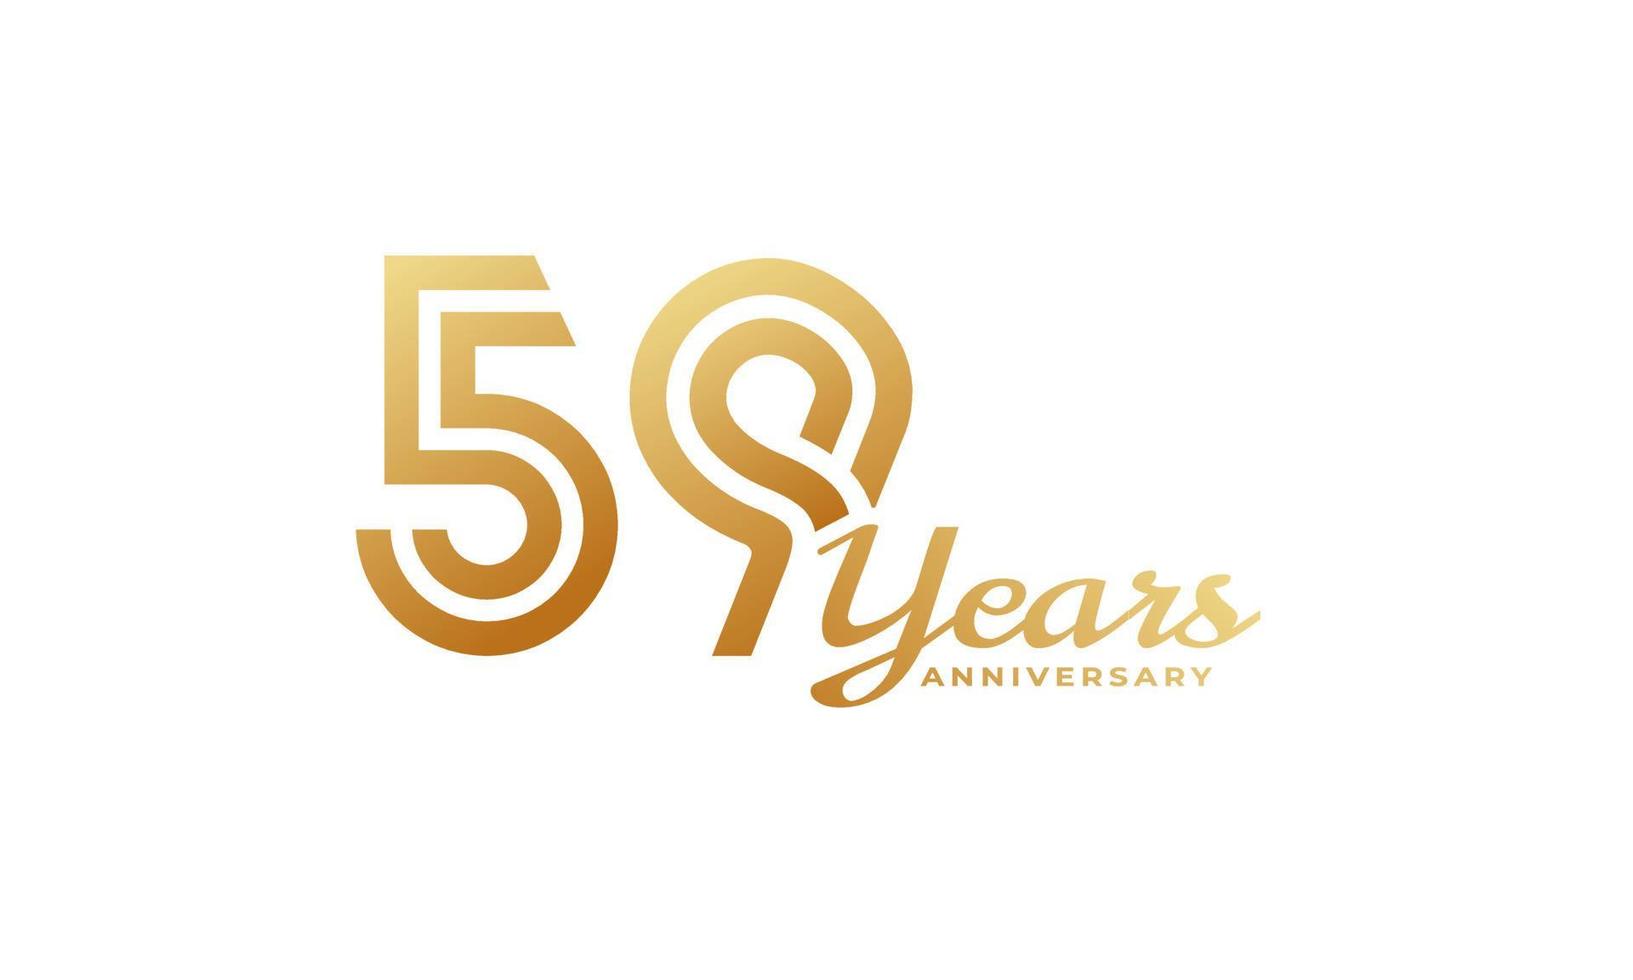 Celebración del aniversario de 59 años con escritura a mano en color dorado para eventos de celebración, bodas, tarjetas de felicitación e invitaciones aisladas en fondo blanco vector